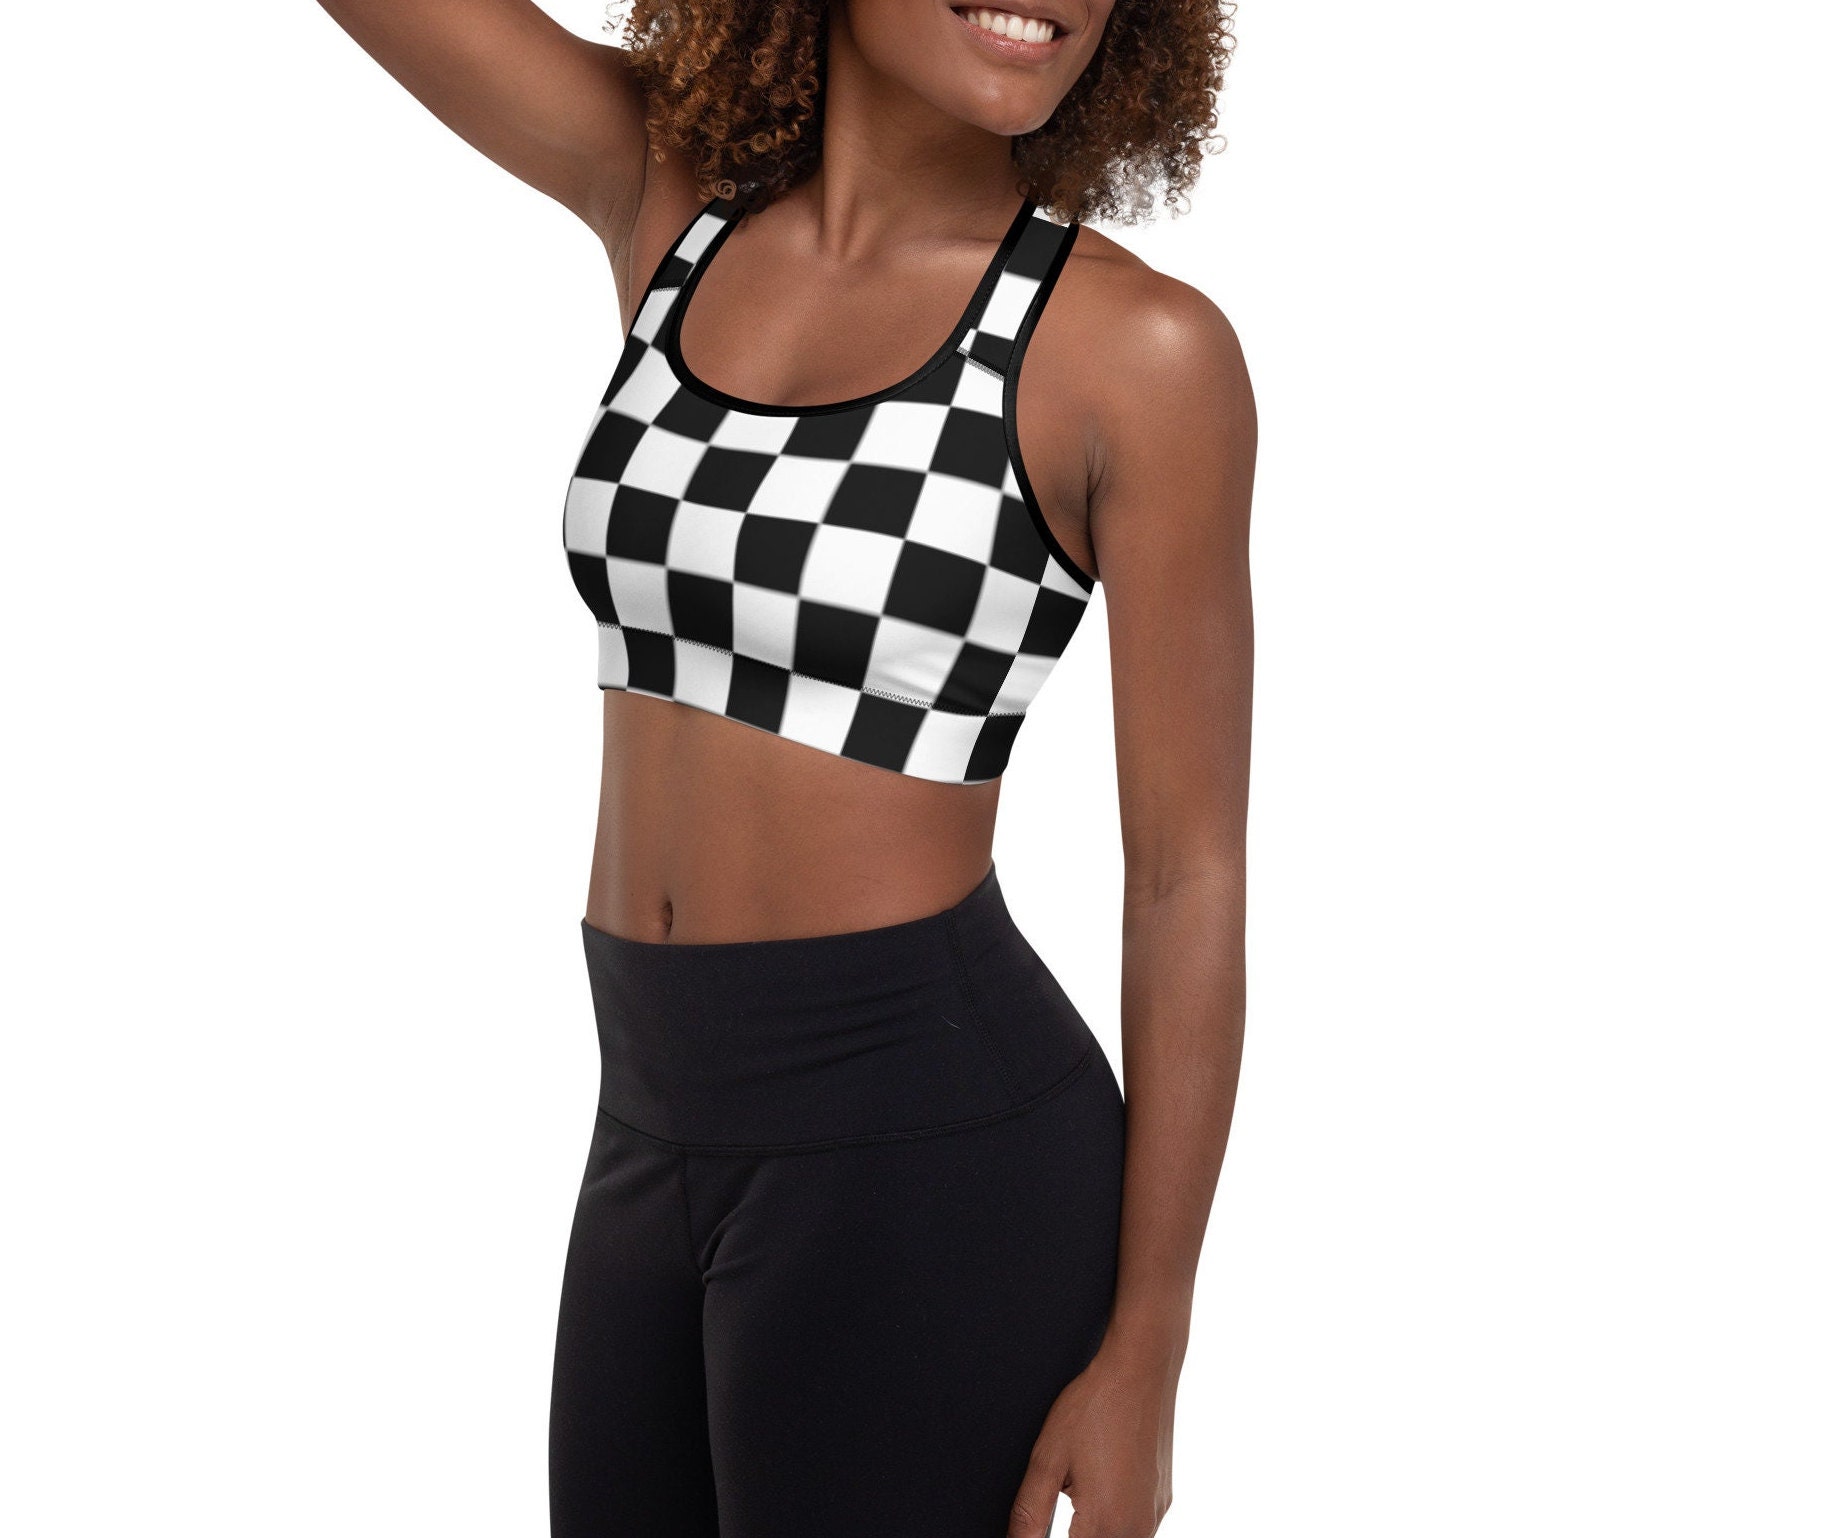  Black White Racing Checkered Women's Sports Bra Padded